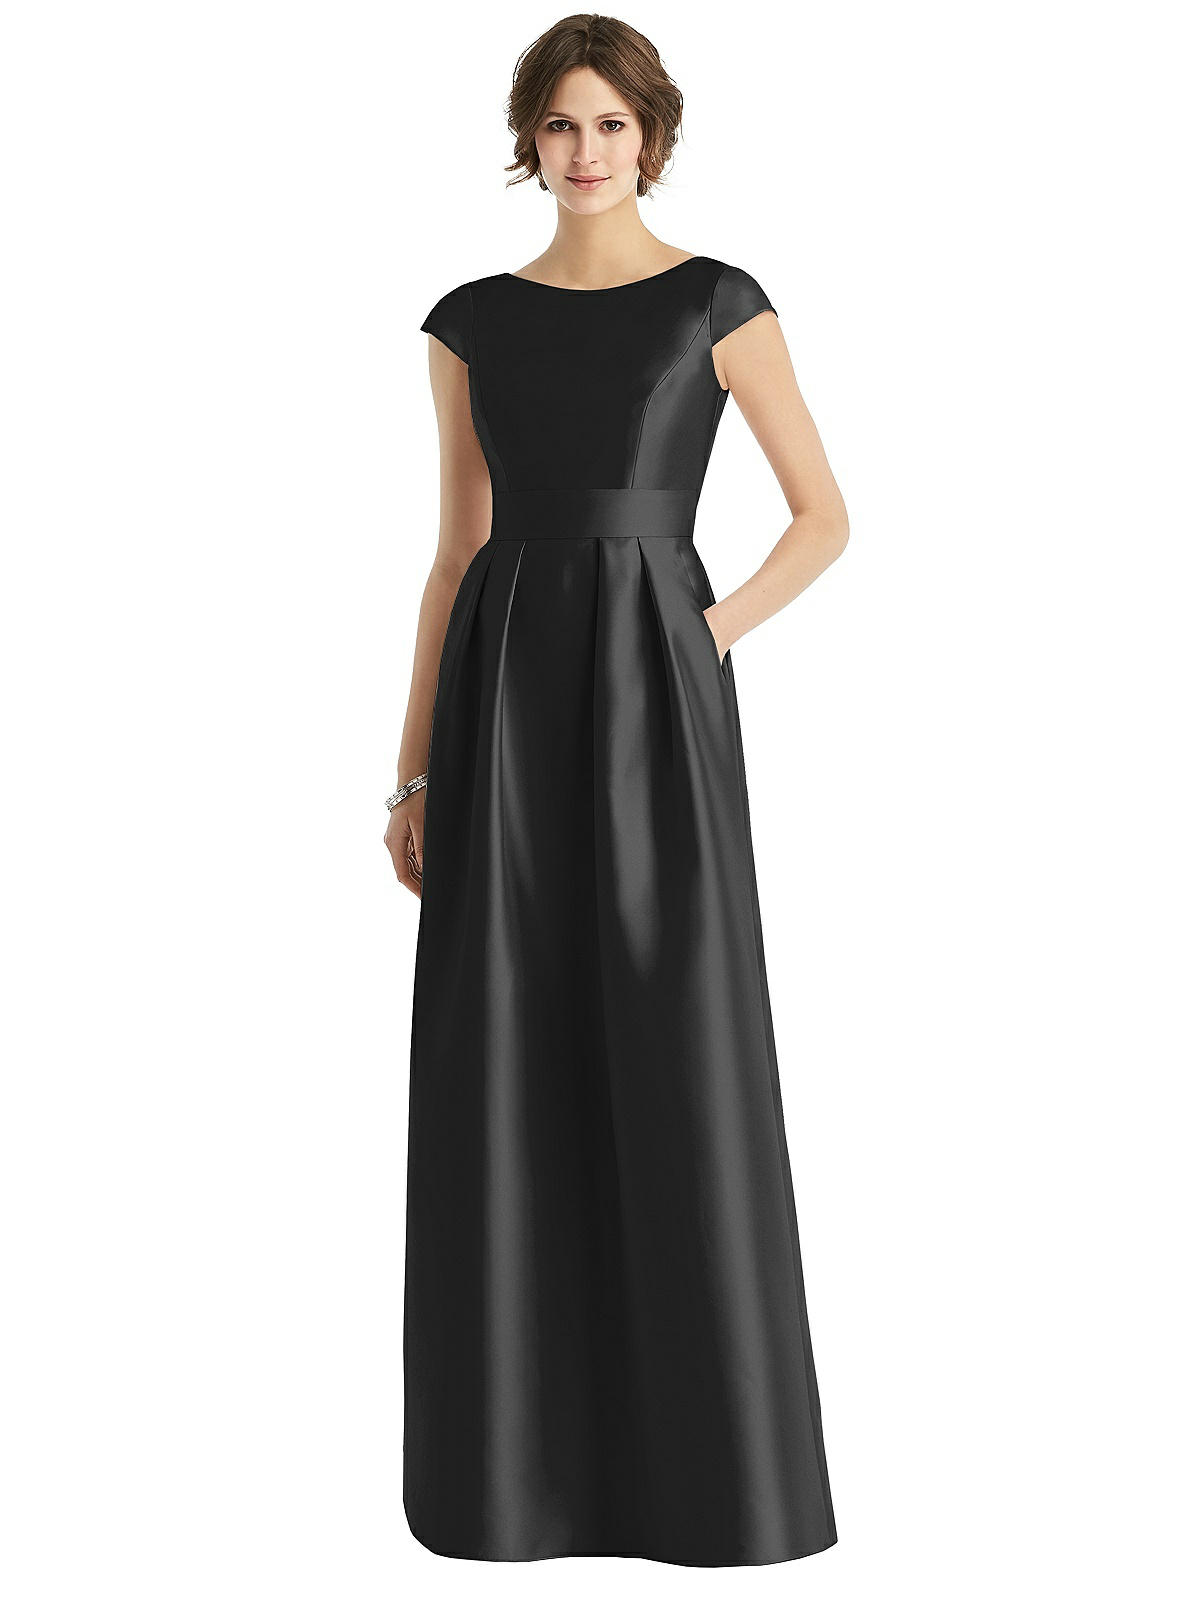 Vintage Evening Dresses, Vintage Formal Dresses Cap Sleeve Pleated Skirt Dress with Pockets  AT vintagedancer.com